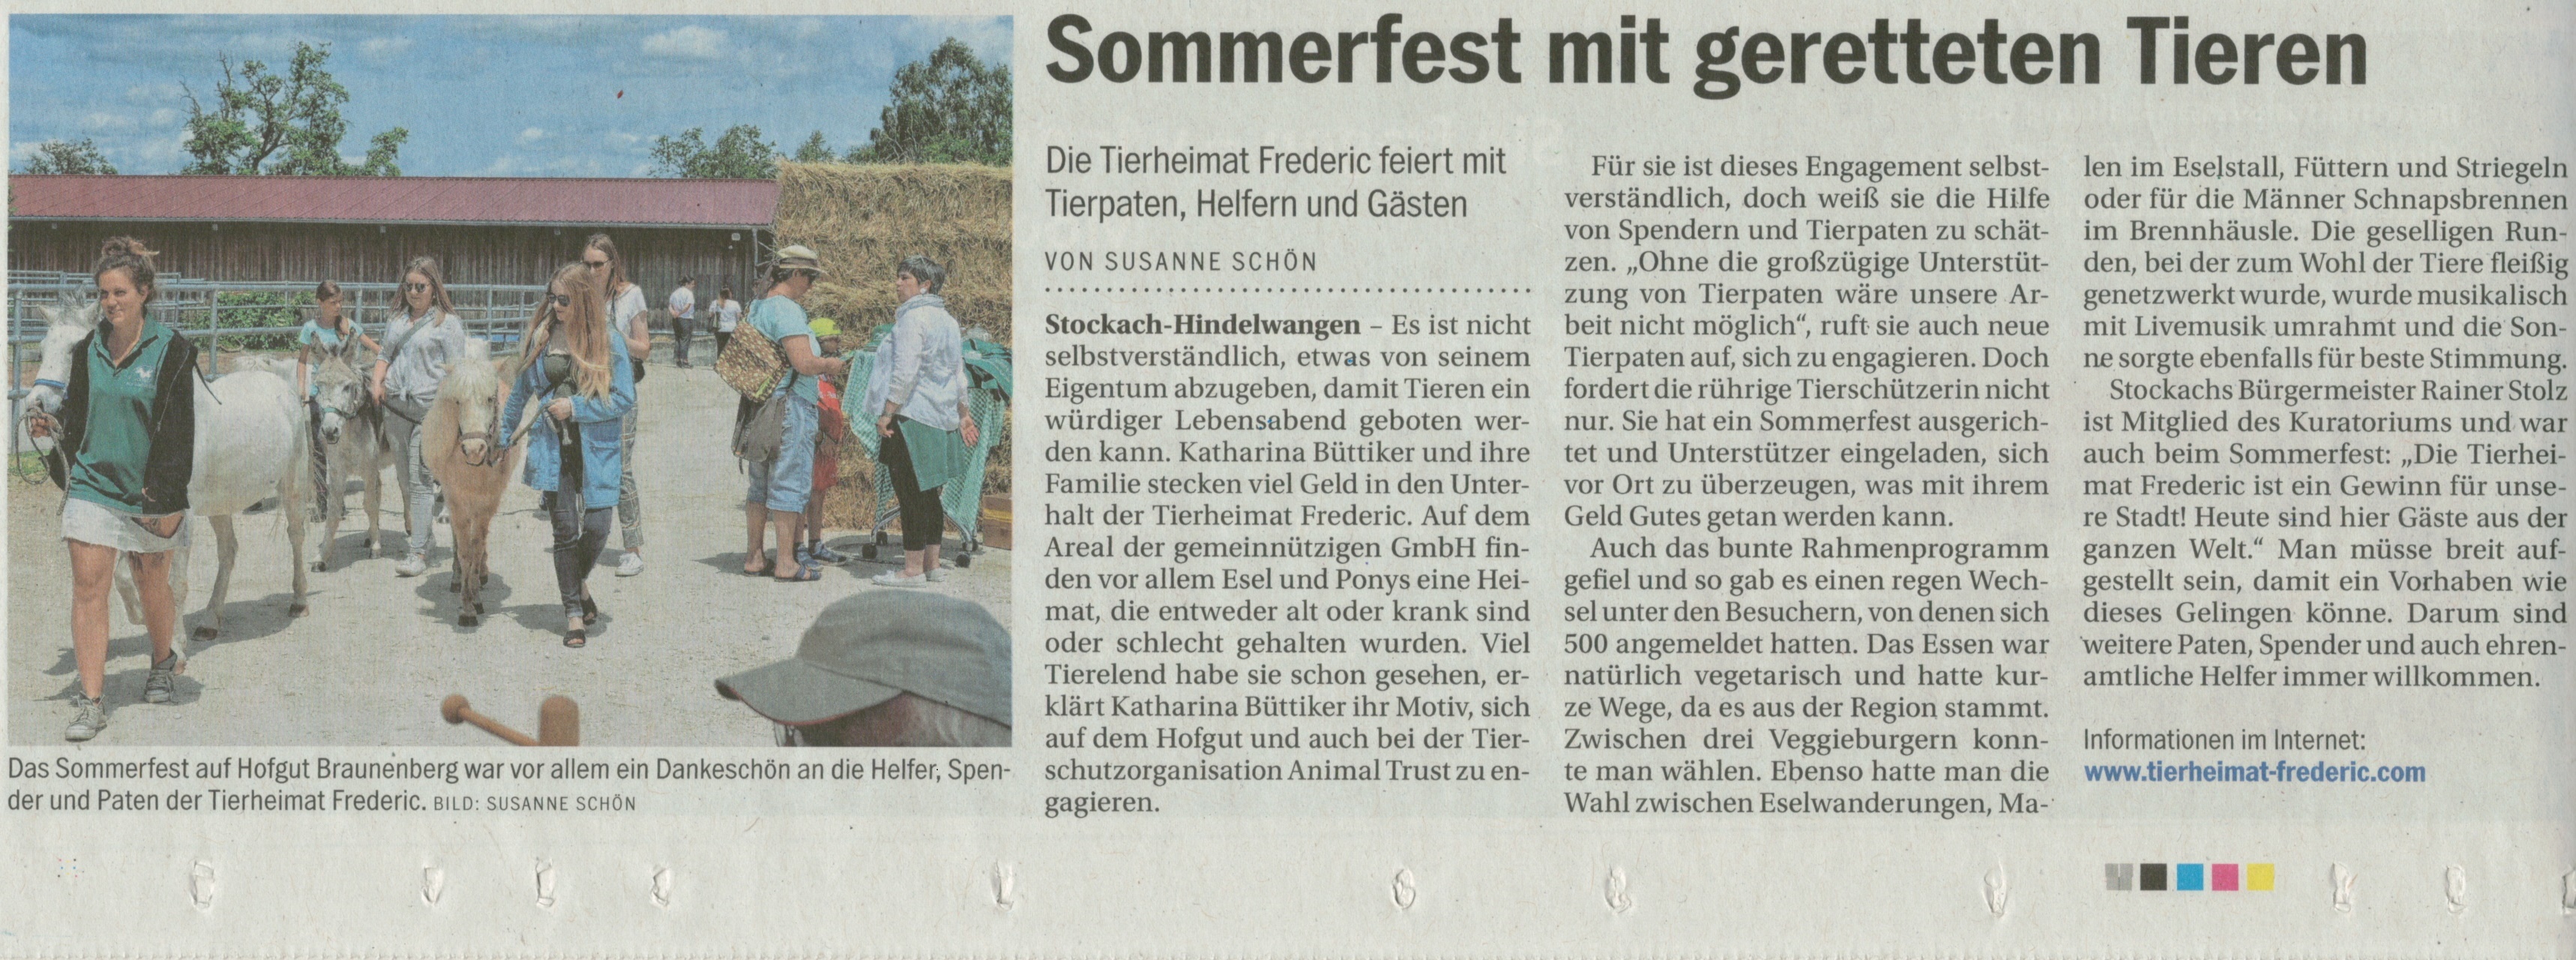 Artikel im Südkurier über das wunderbare Sommerfest auf Hofgut Braunenberg